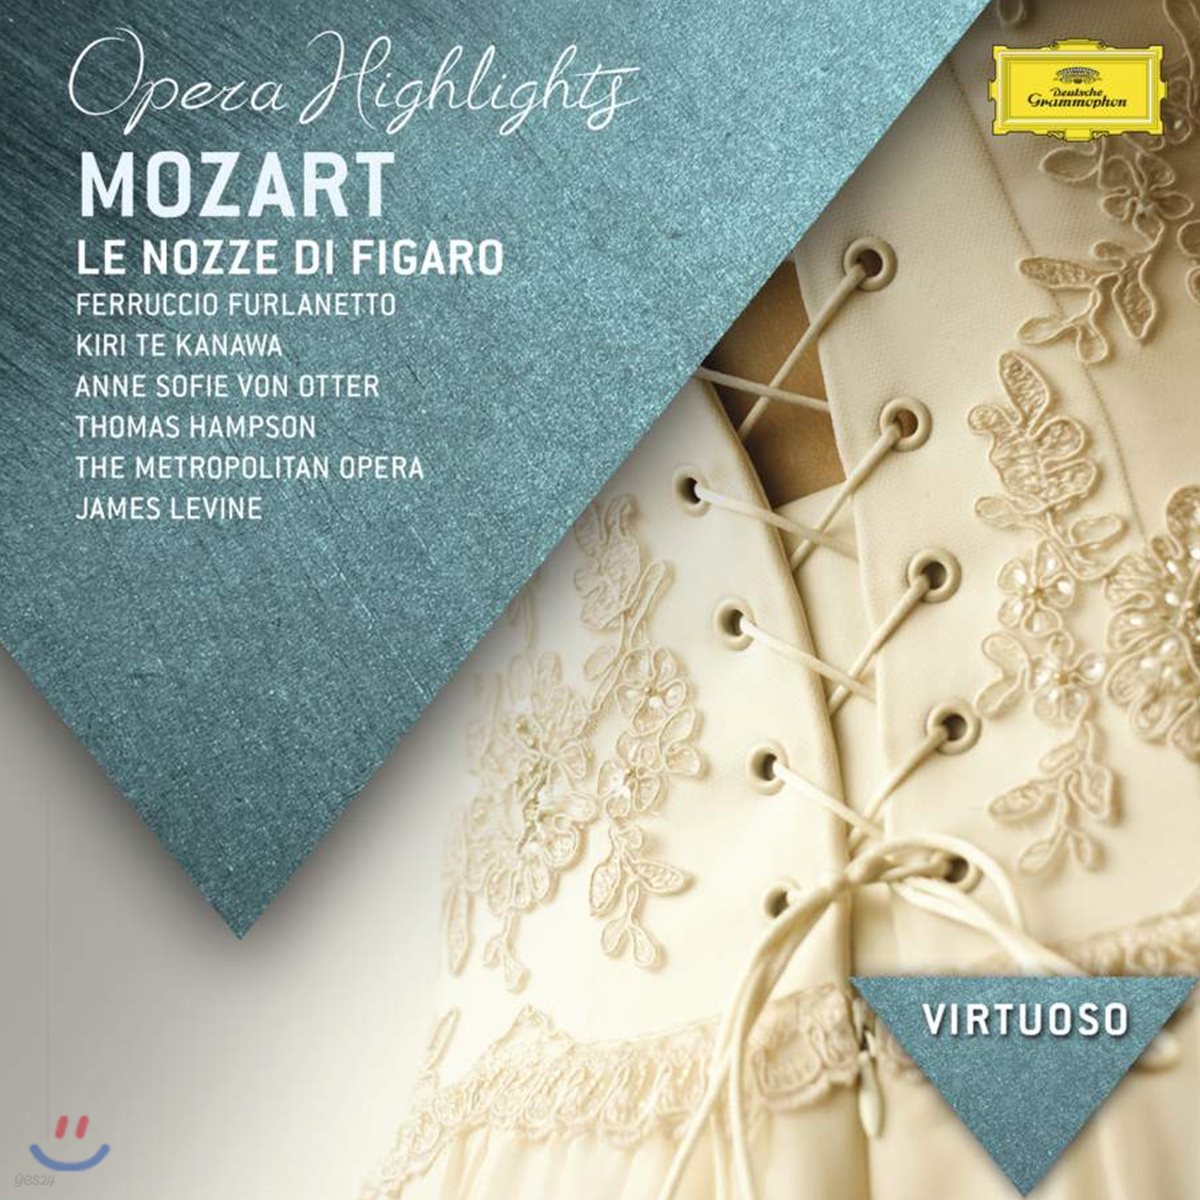 Ferruccio Furlanetto 모차르트: 피가로의 결혼 하이라이트 (Mozart: Le nozze di Figaro, K492 highlights)